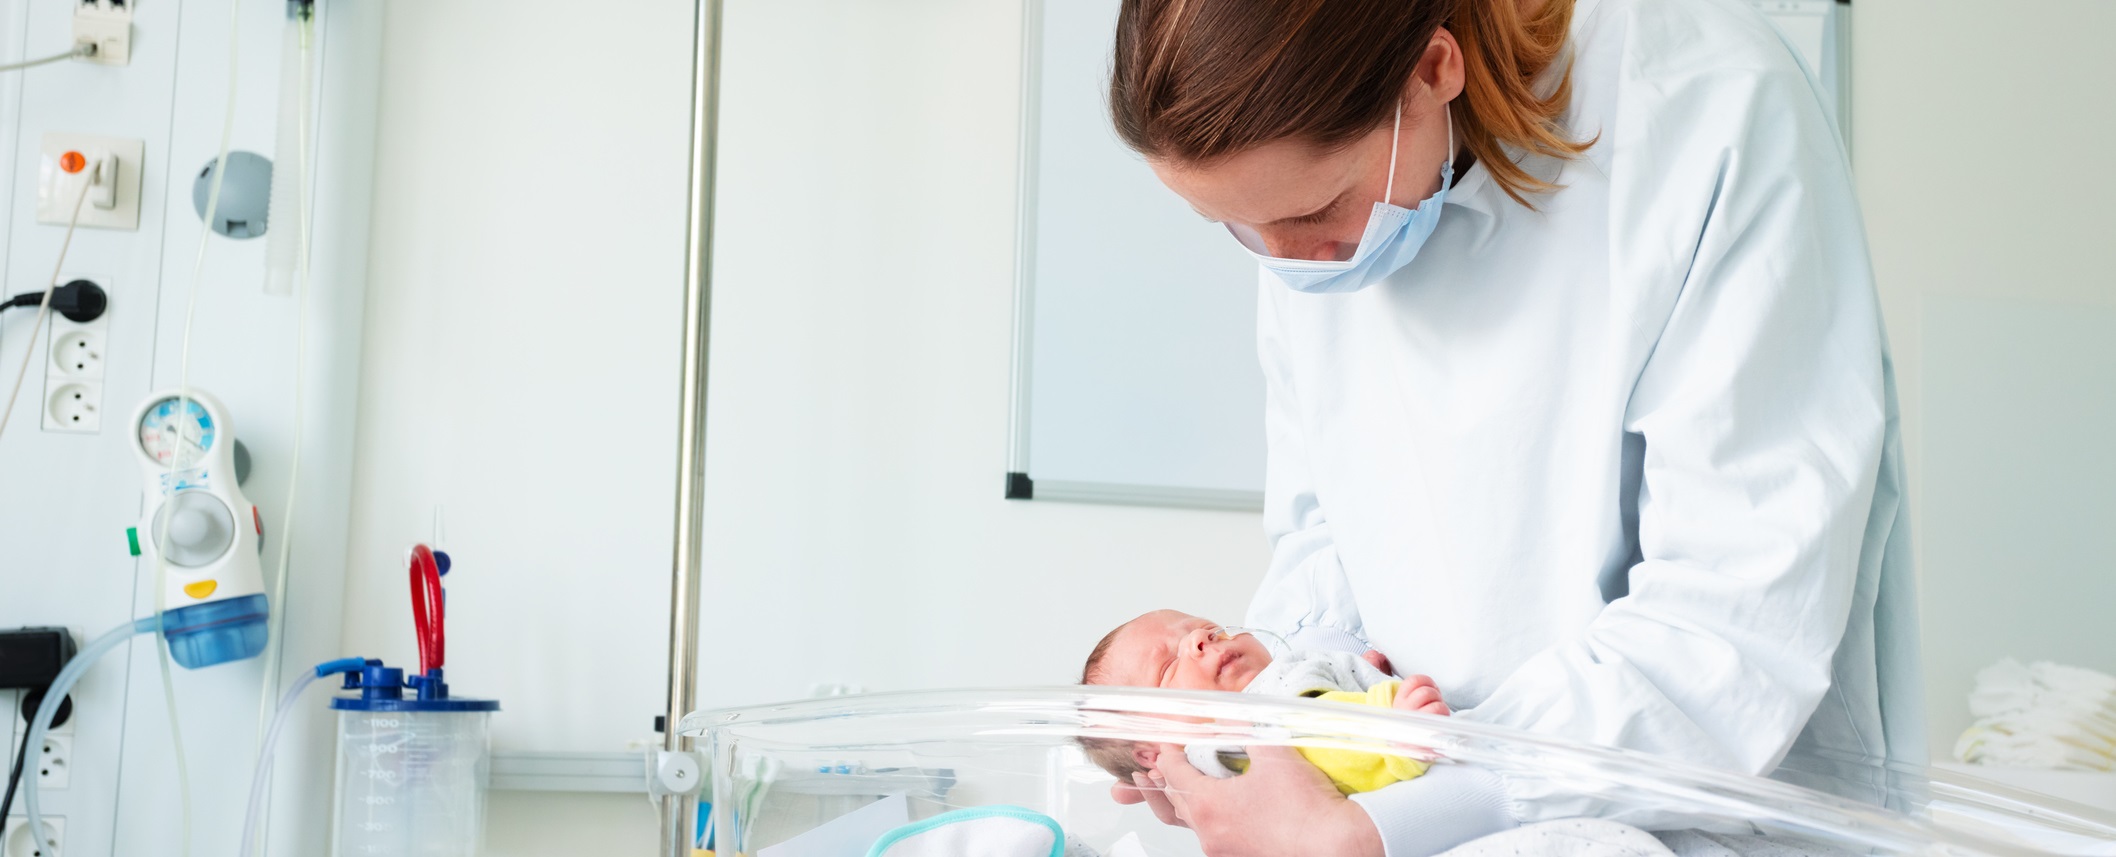 Актуальные вопросы неонатологии для врачей клинических специальностей: наблюдение доношенных и недоношенных новорожденных детей на амбулаторном этапе